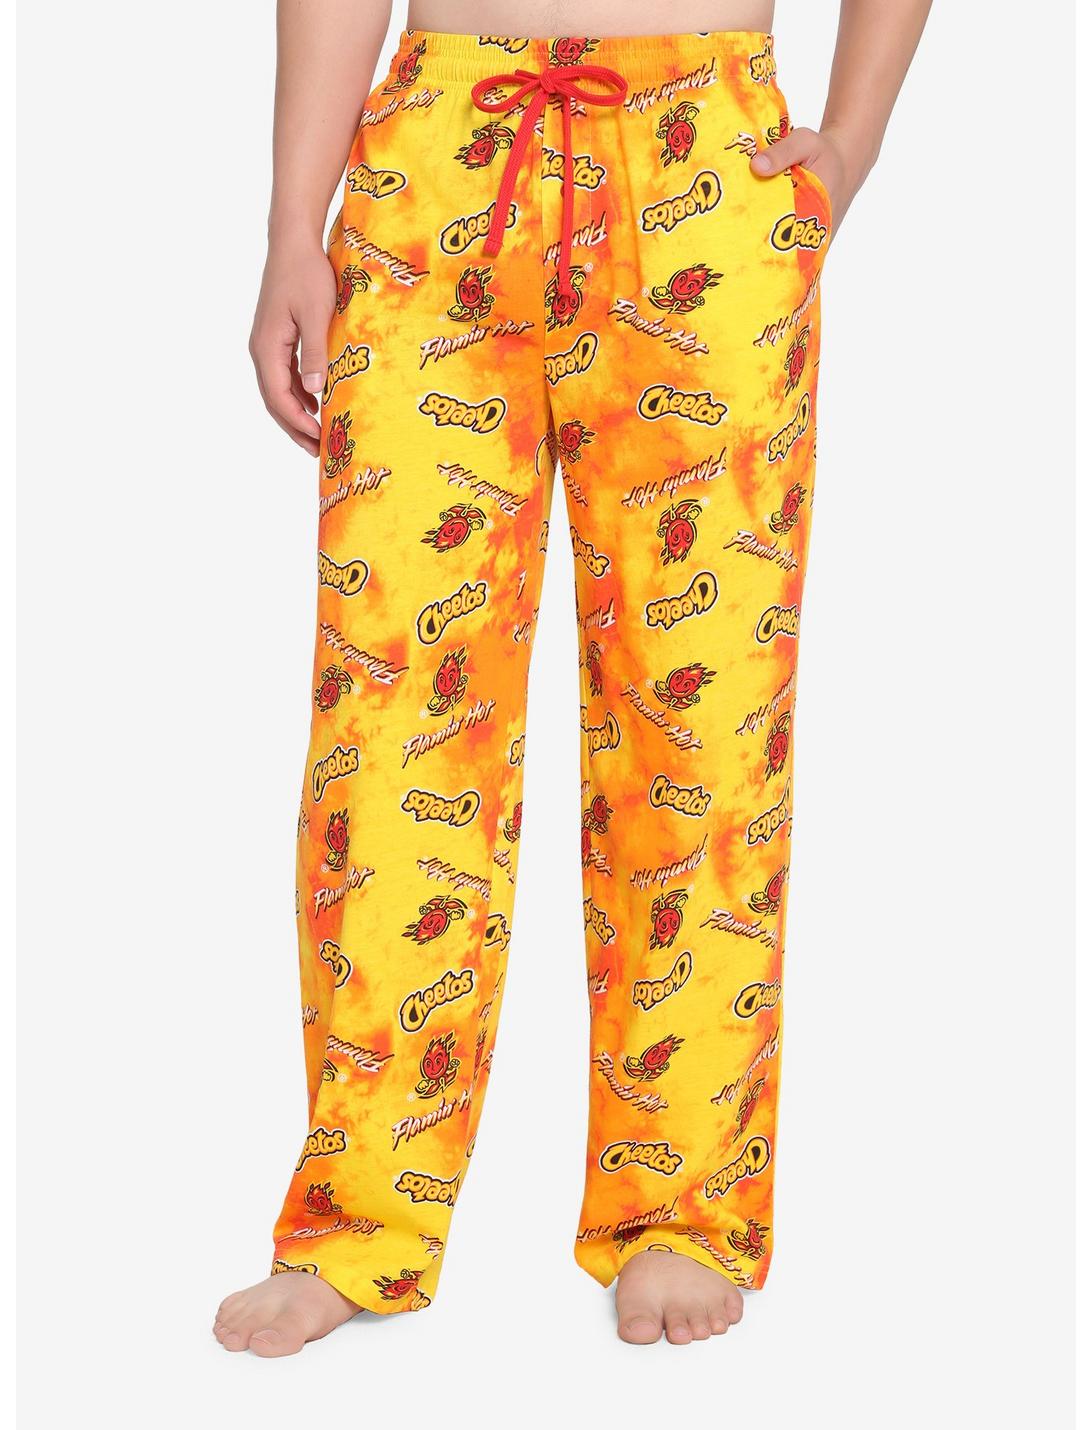 Cheetos Flamin' Hot Logo Pajama Pants, RED, hi-res